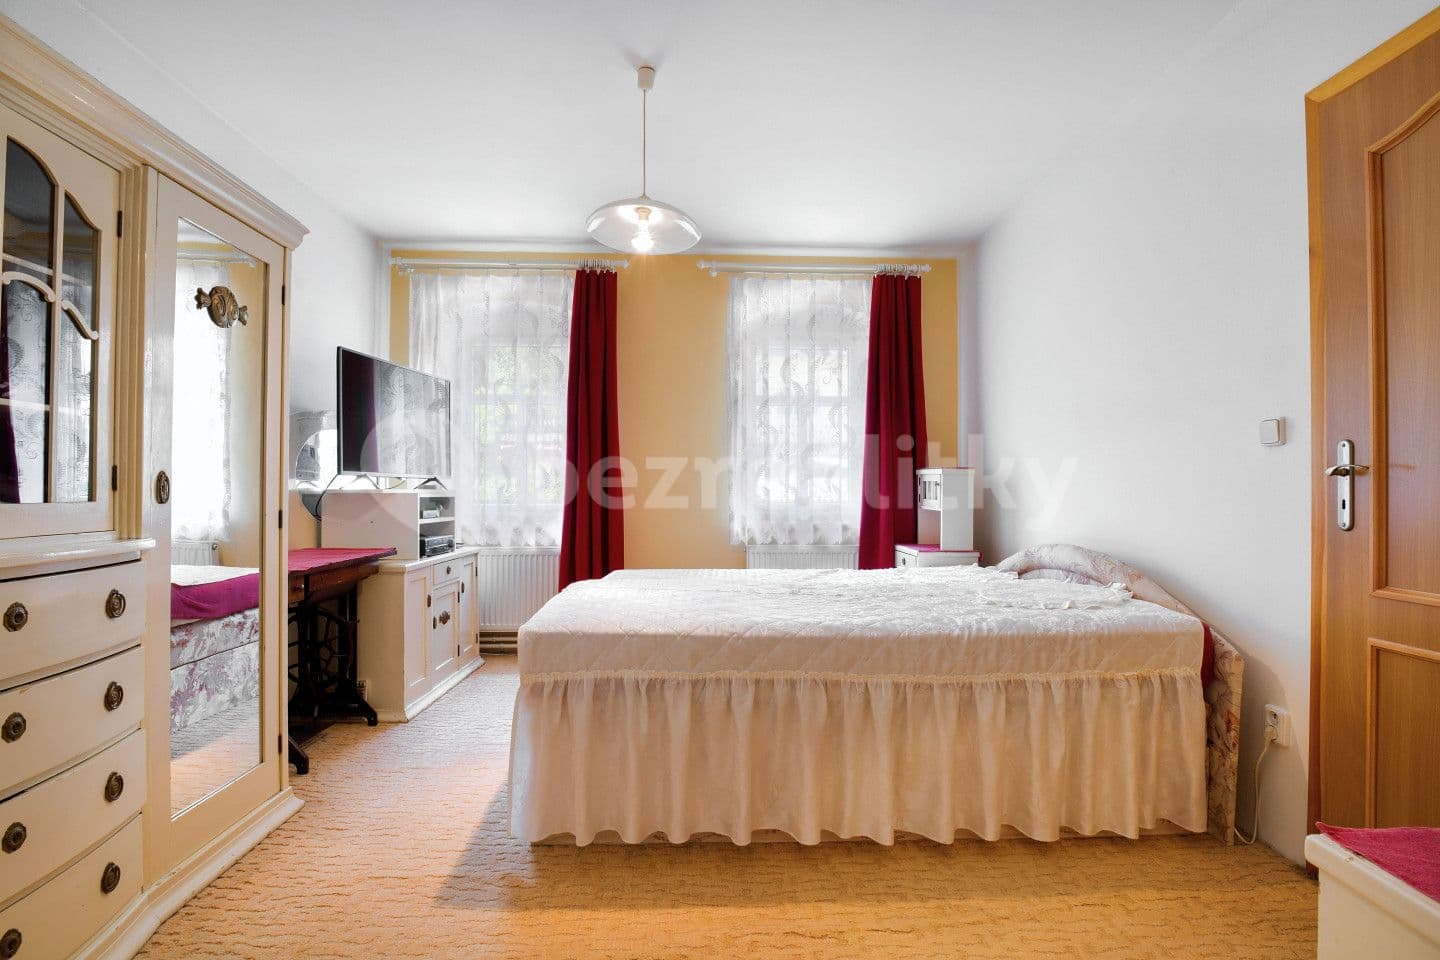 2 bedroom with open-plan kitchen flat for sale, 70 m², Hlavní, Perštejn, Ústecký Region